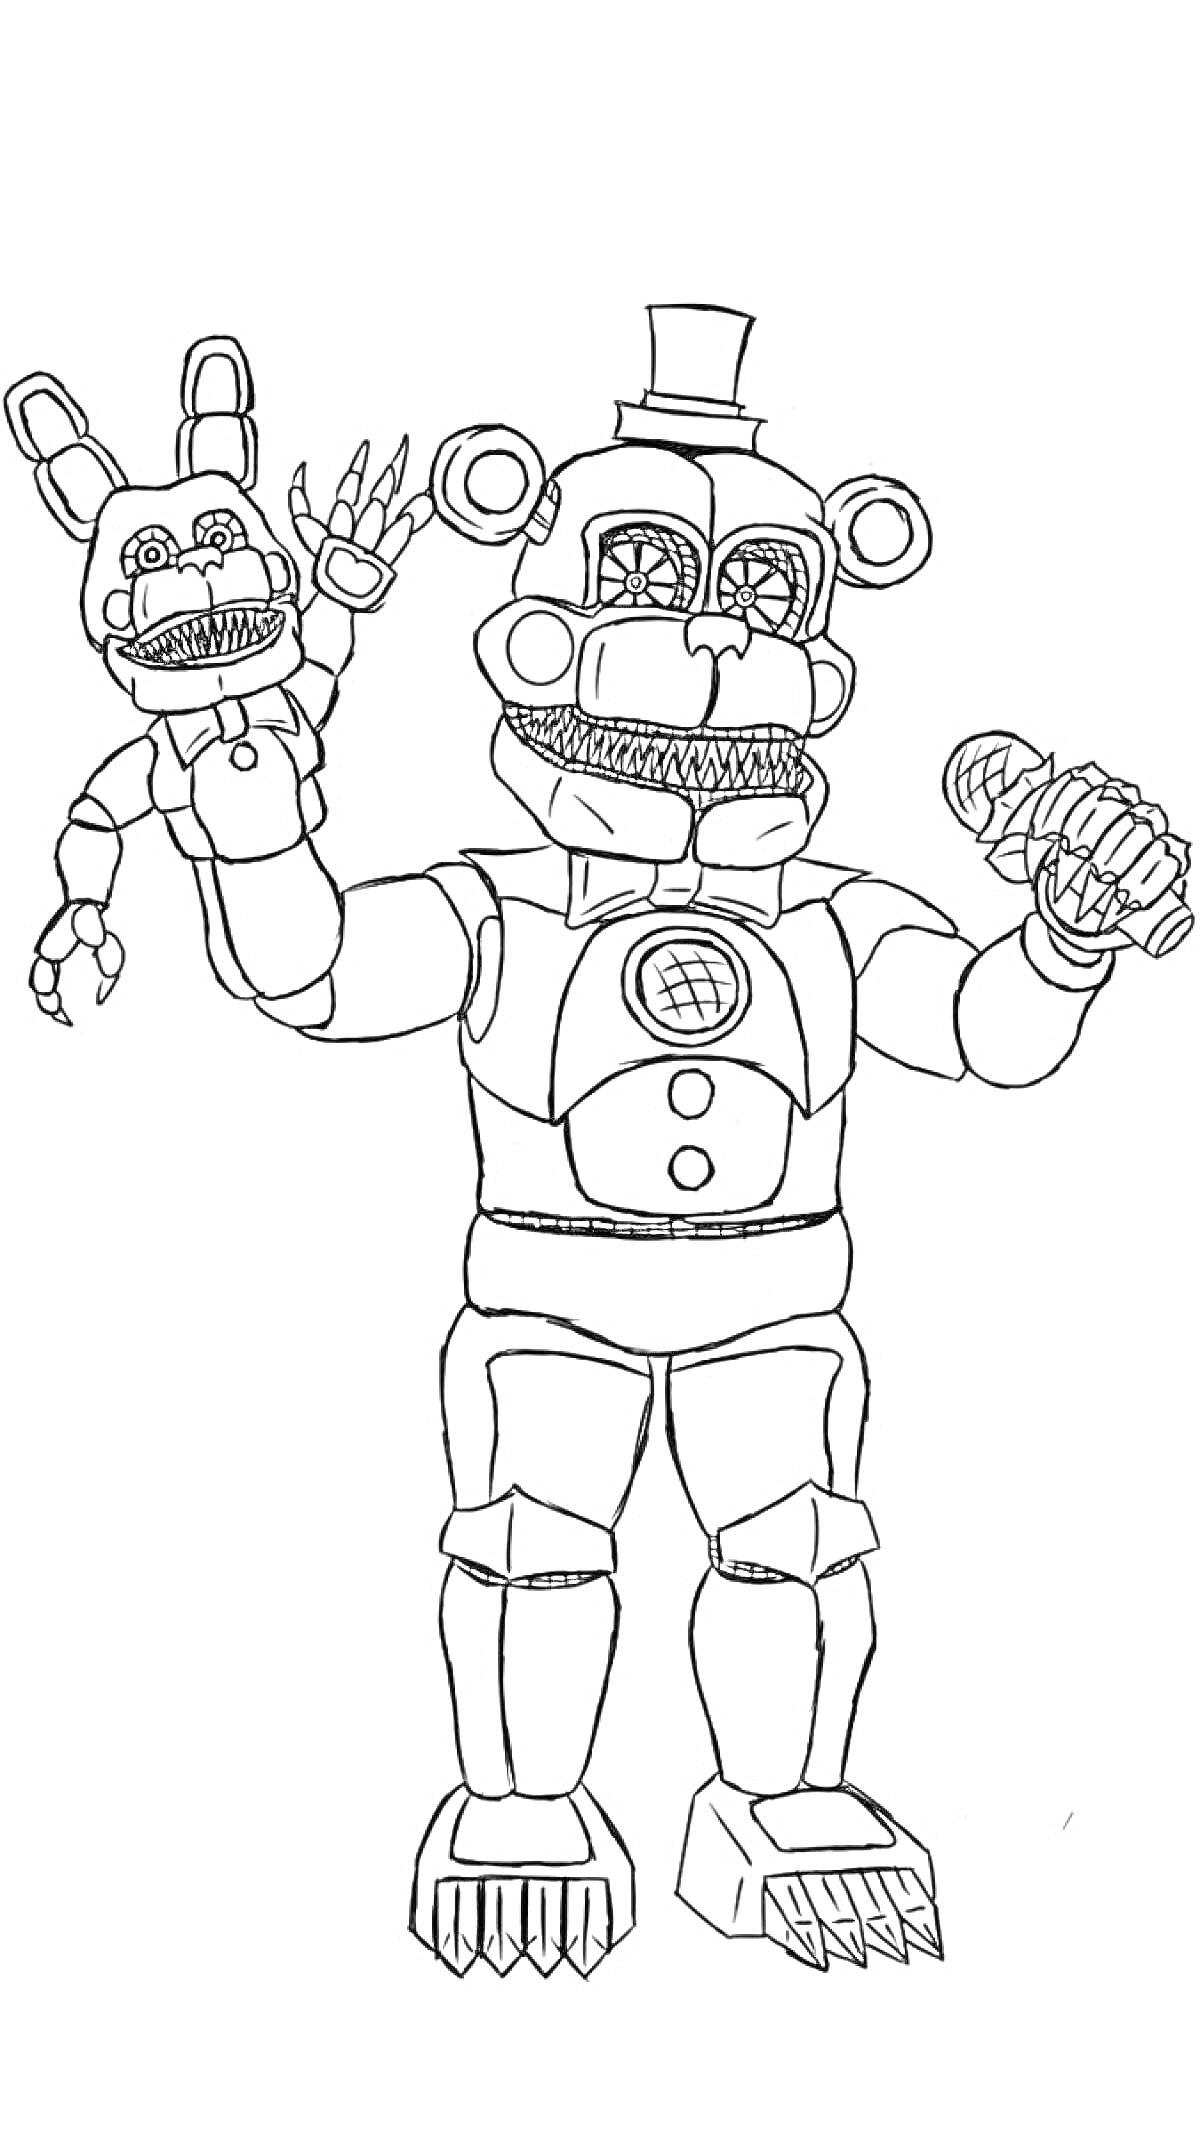 Раскраска Аниматроник с микрофоном и куклой-аниматроником на правой руке